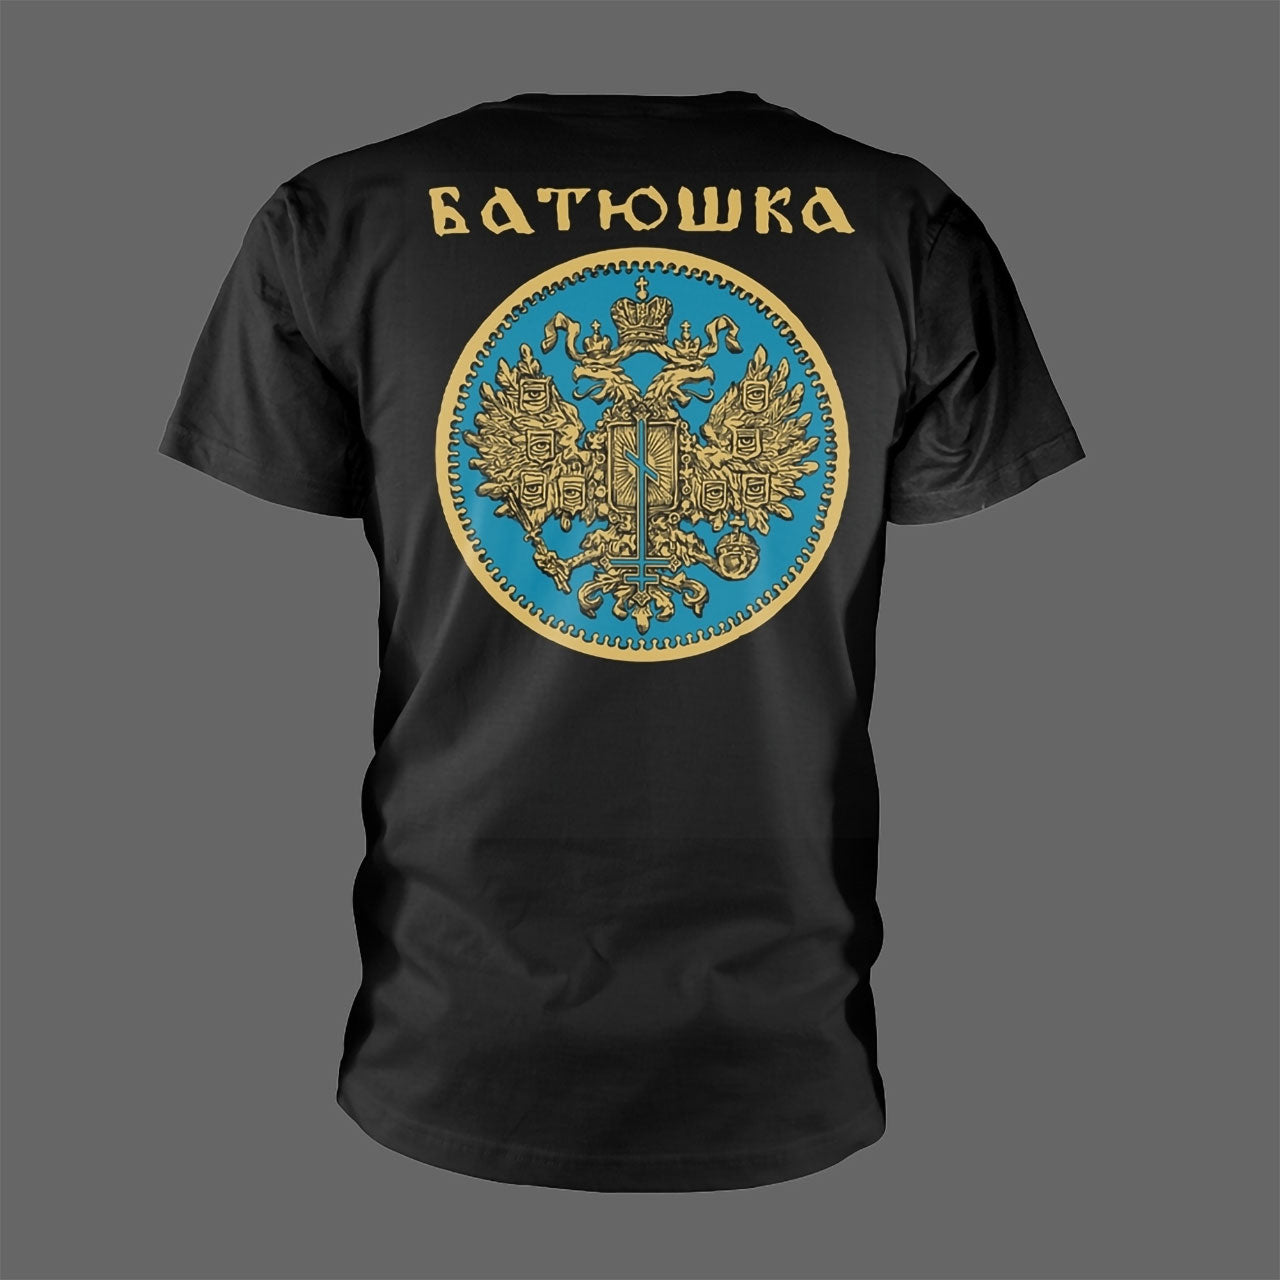 Batushka - Carju Niebiesnyj (Царю Небесный) (Black) (T-Shirt)